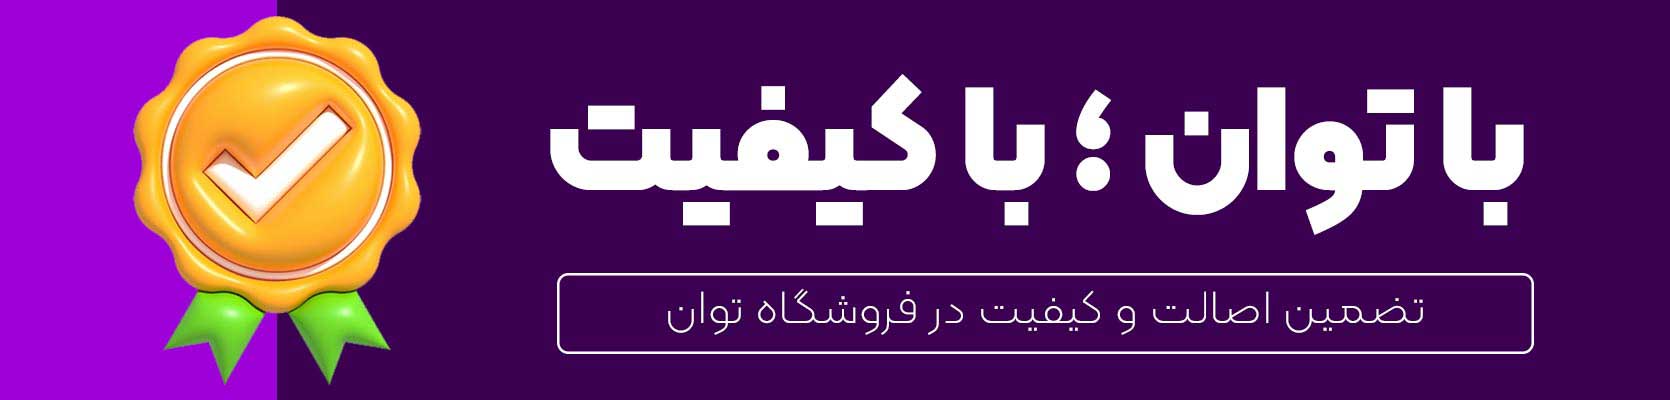 فروشگاه توان نمایندگی رسمی و اصلی محصولات داهوا در تهران ایران